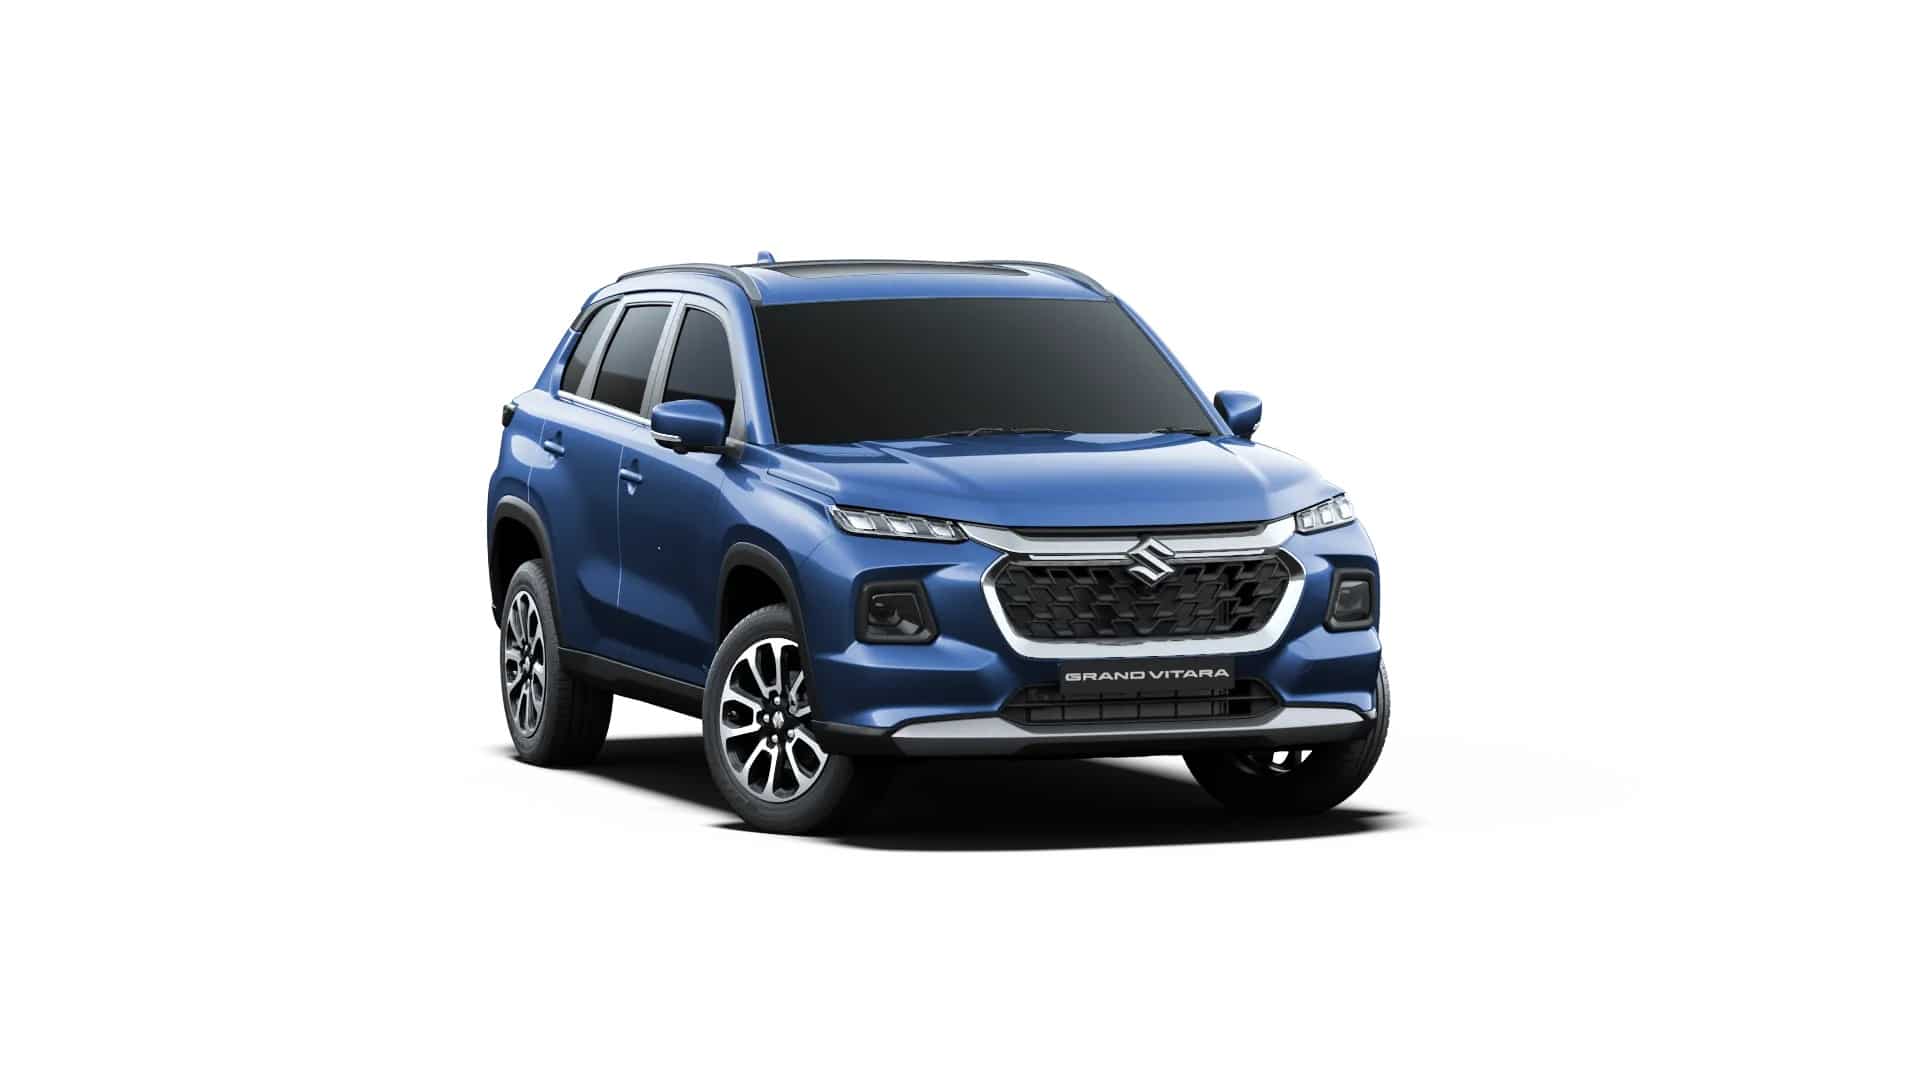 Maruti Suzuki Grand Vitara latest offering in NEXA 